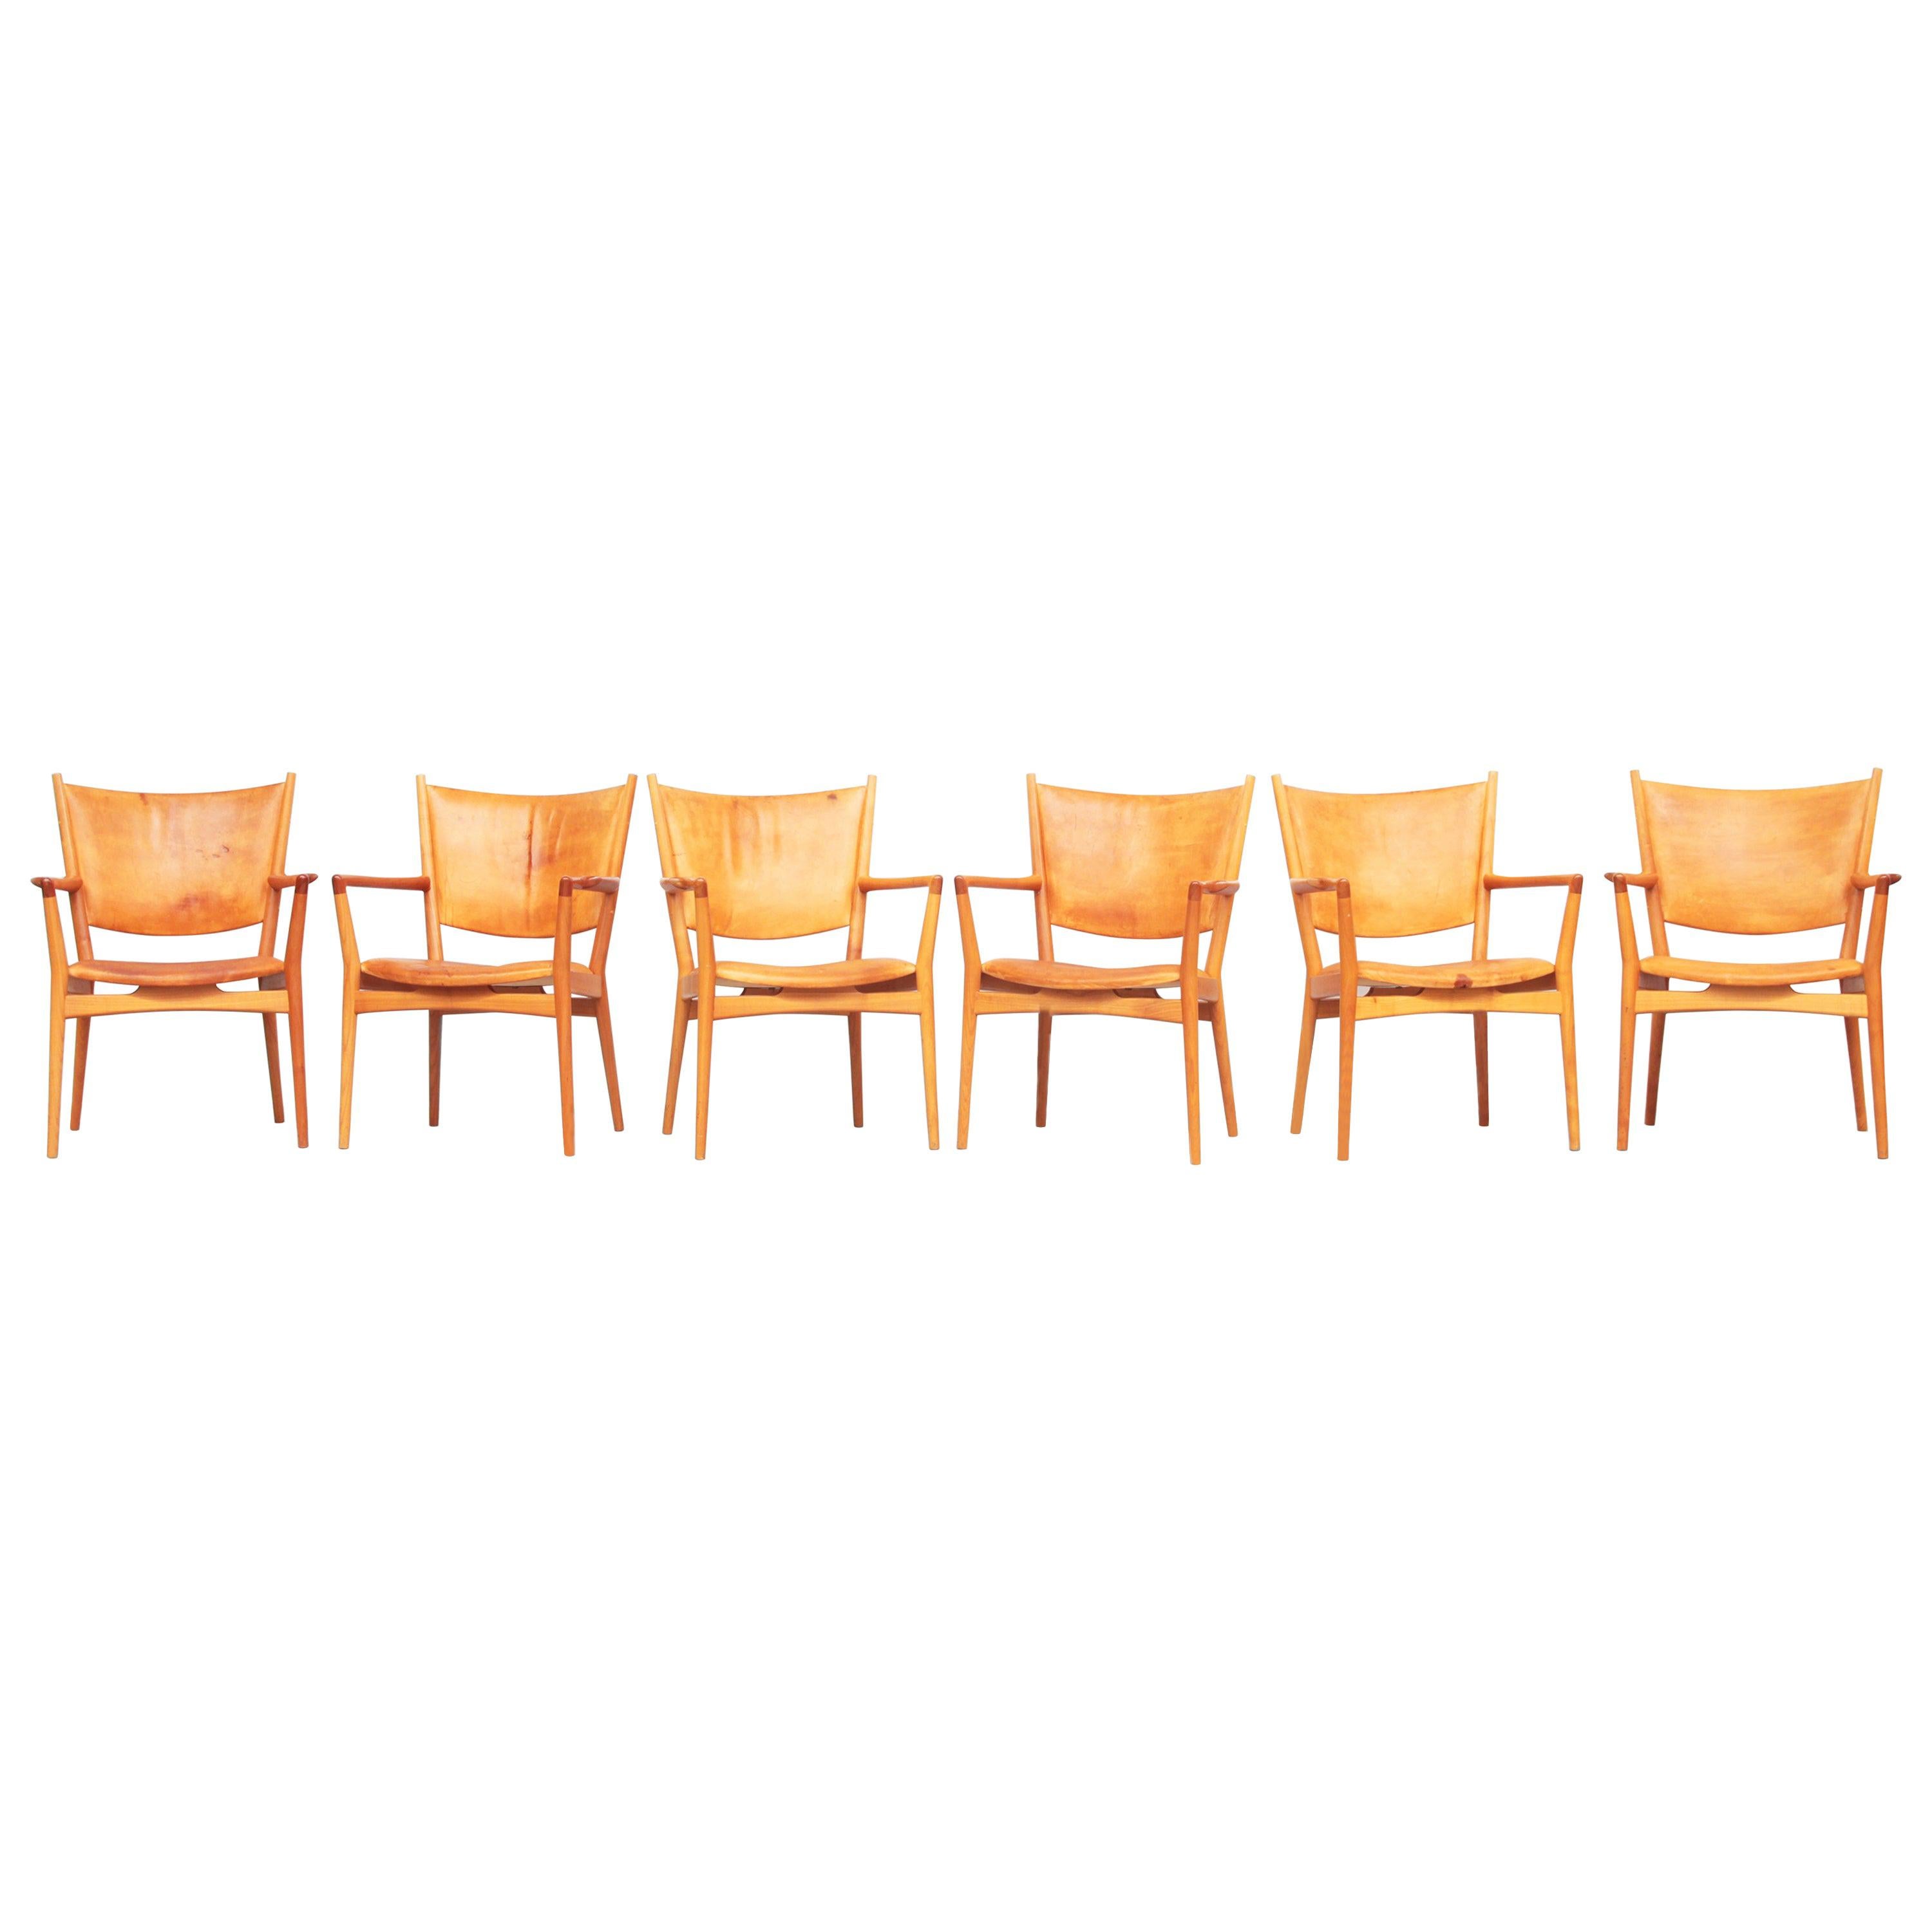 Rare Set of 6 Armchair Dining Chair by Hans J. Wegner for PP Møbler, Denmark